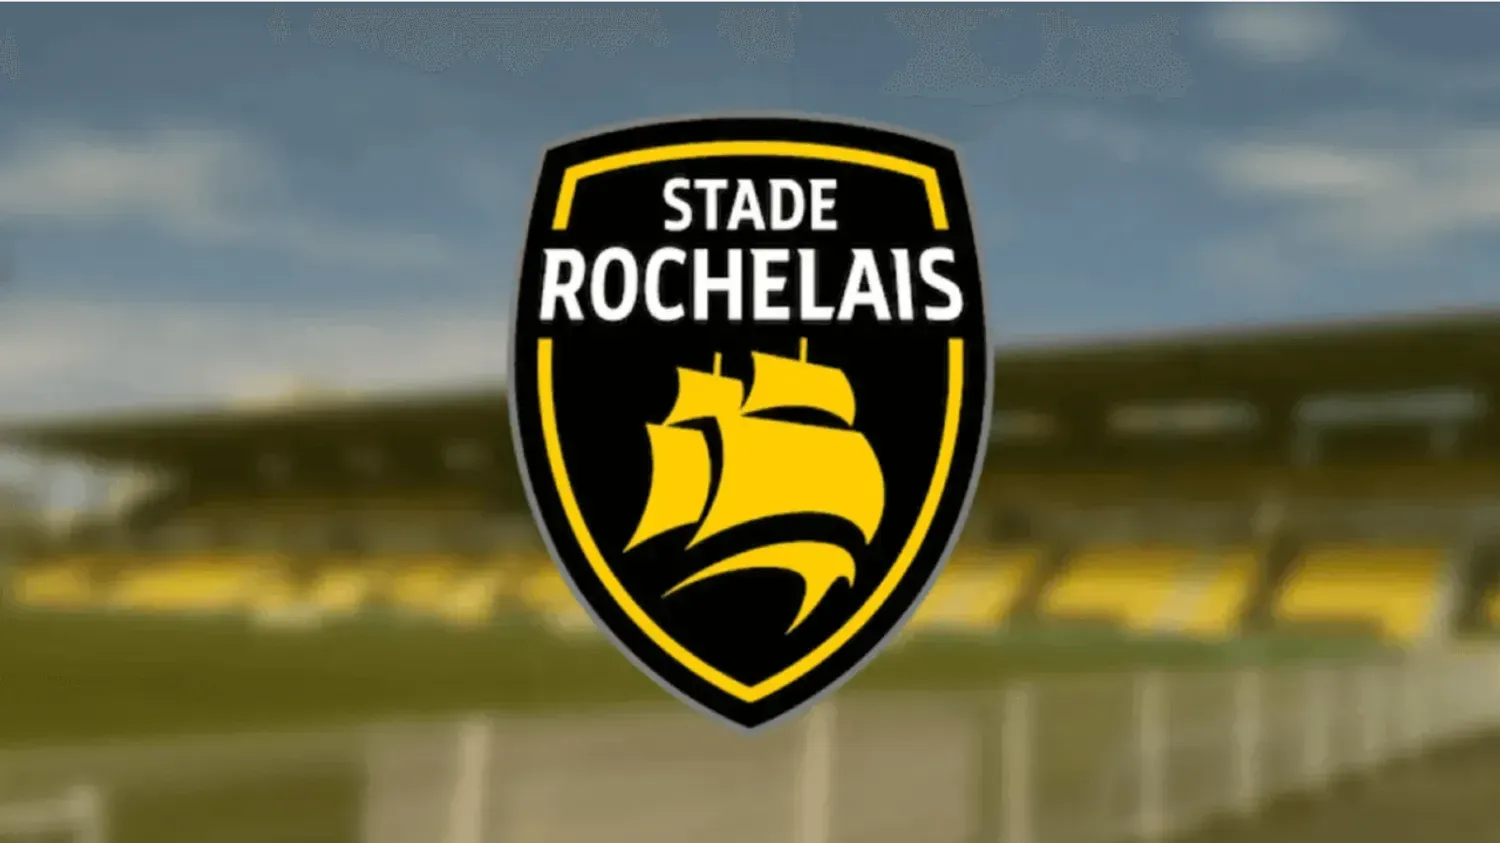 Le Stade Rochelais connaît ses adversaires en Champions Cup